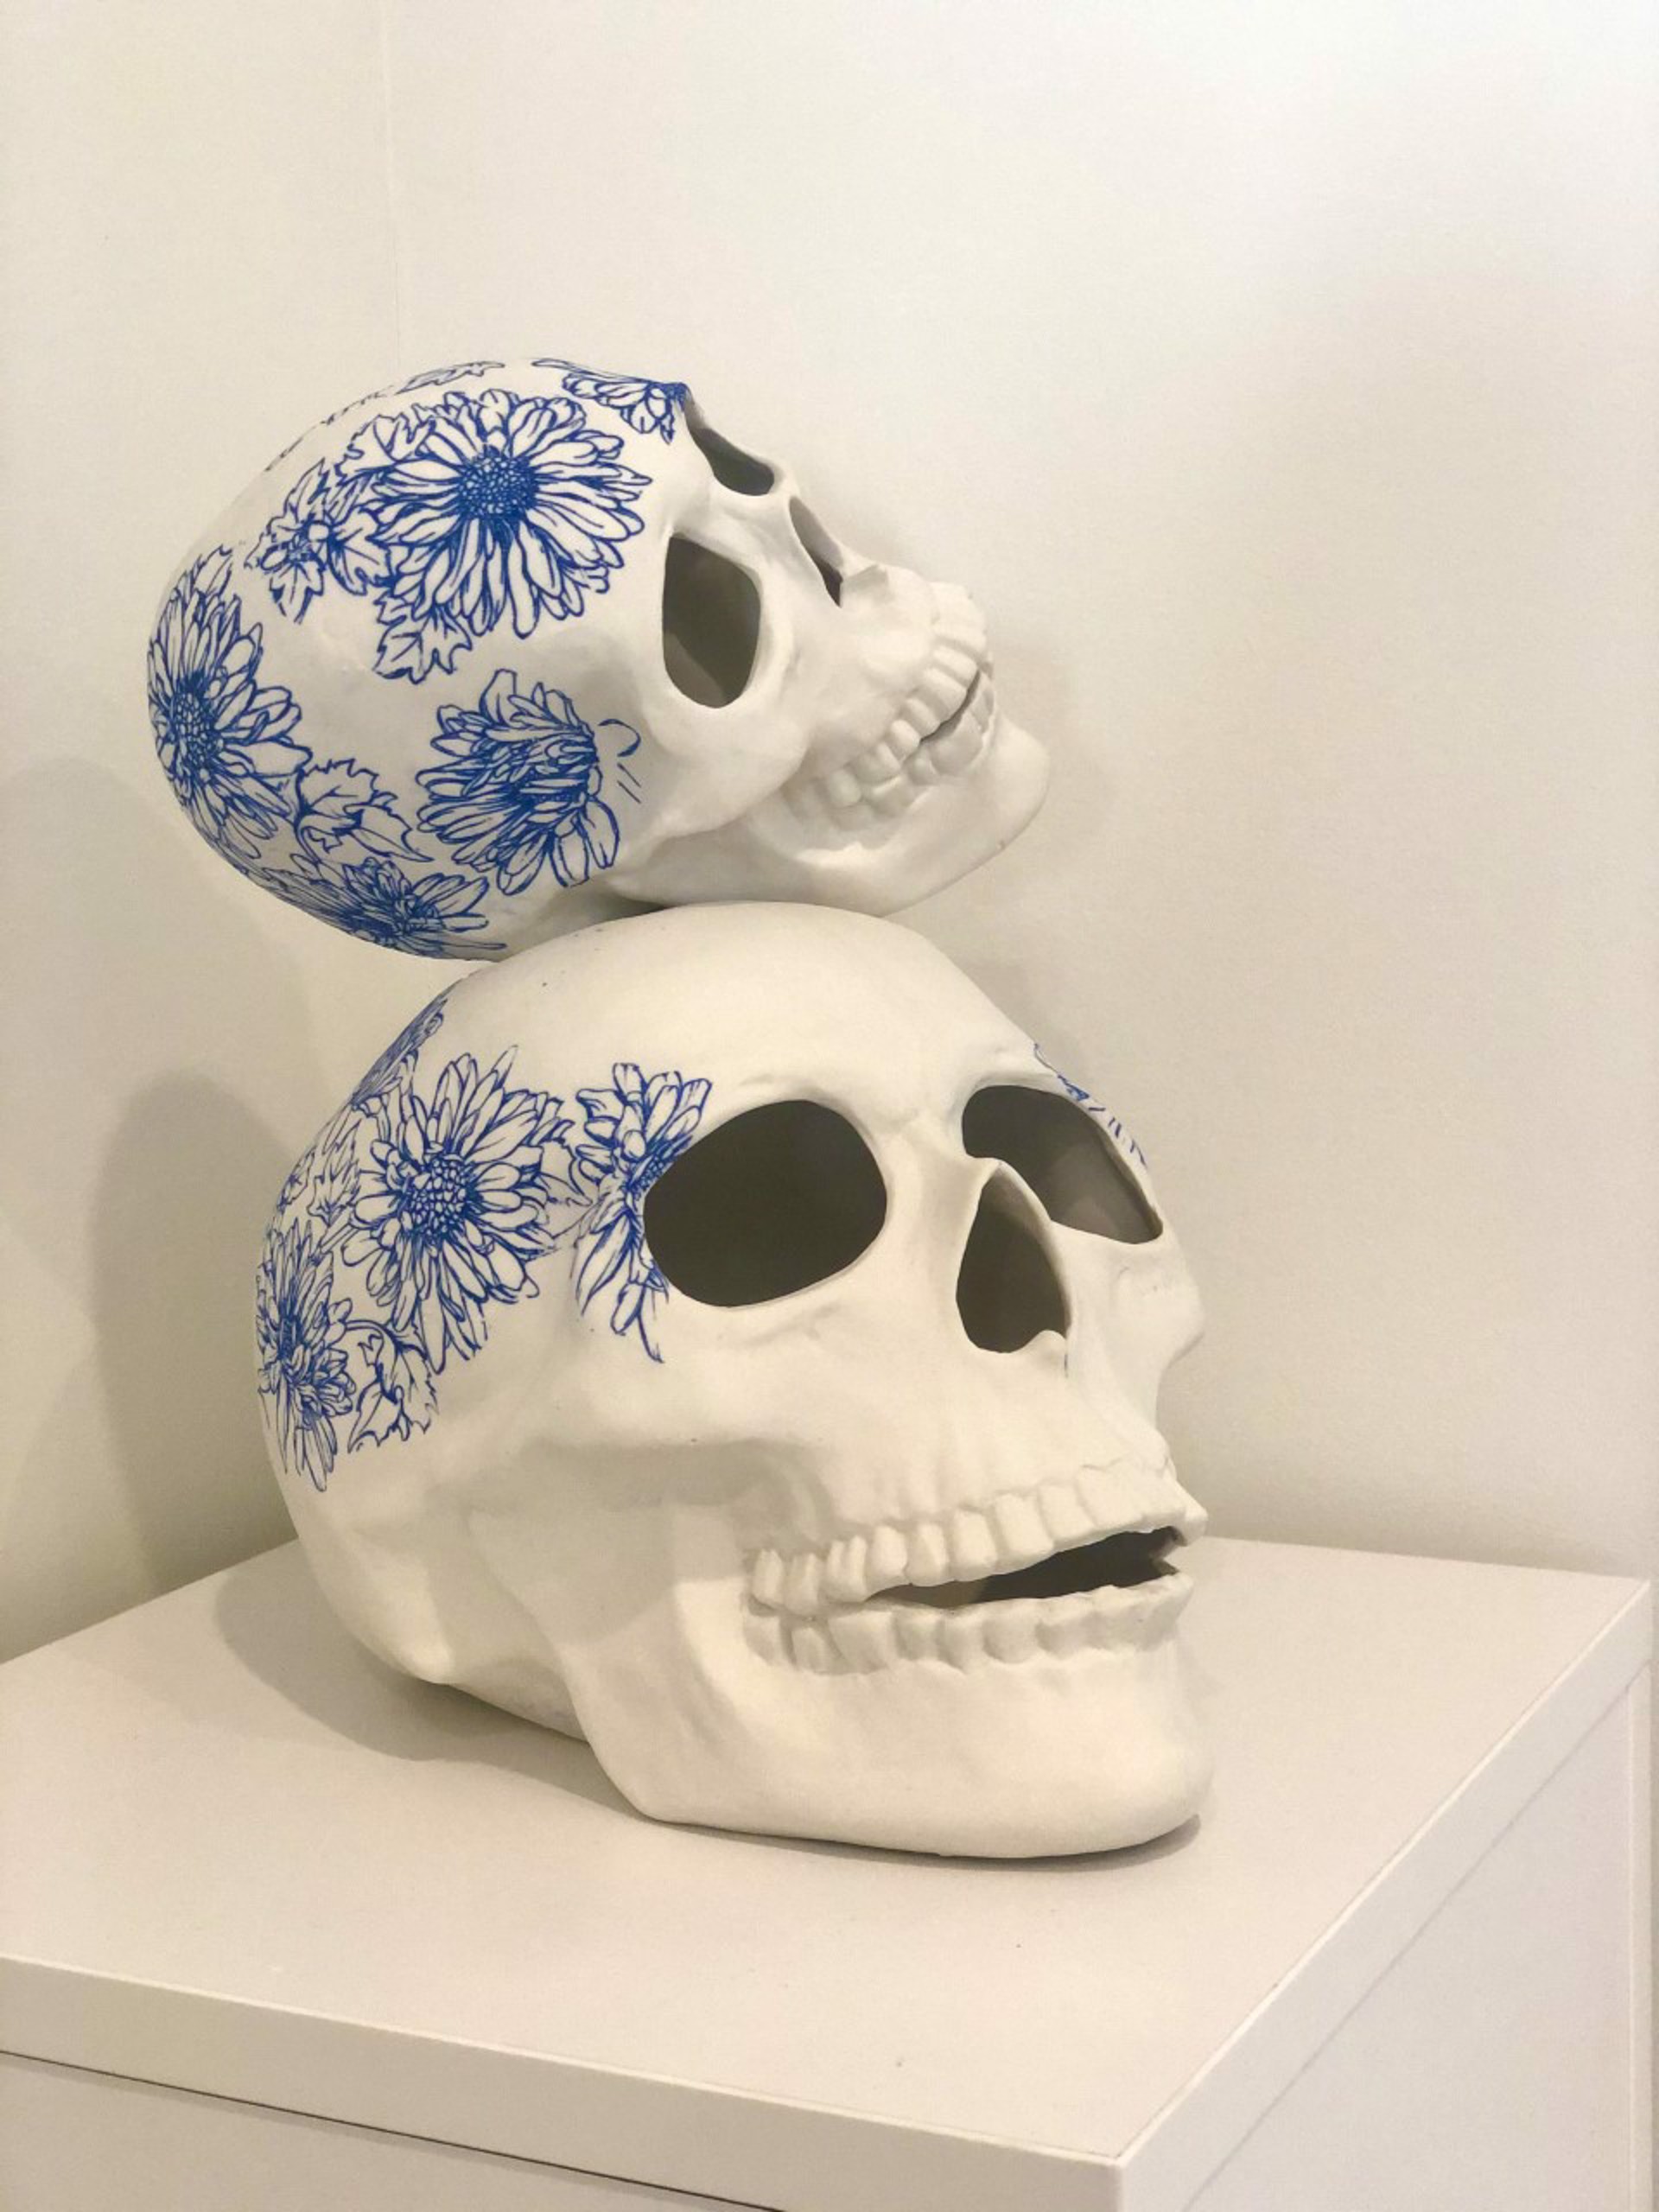 Floral Skull by Jeff Herrity